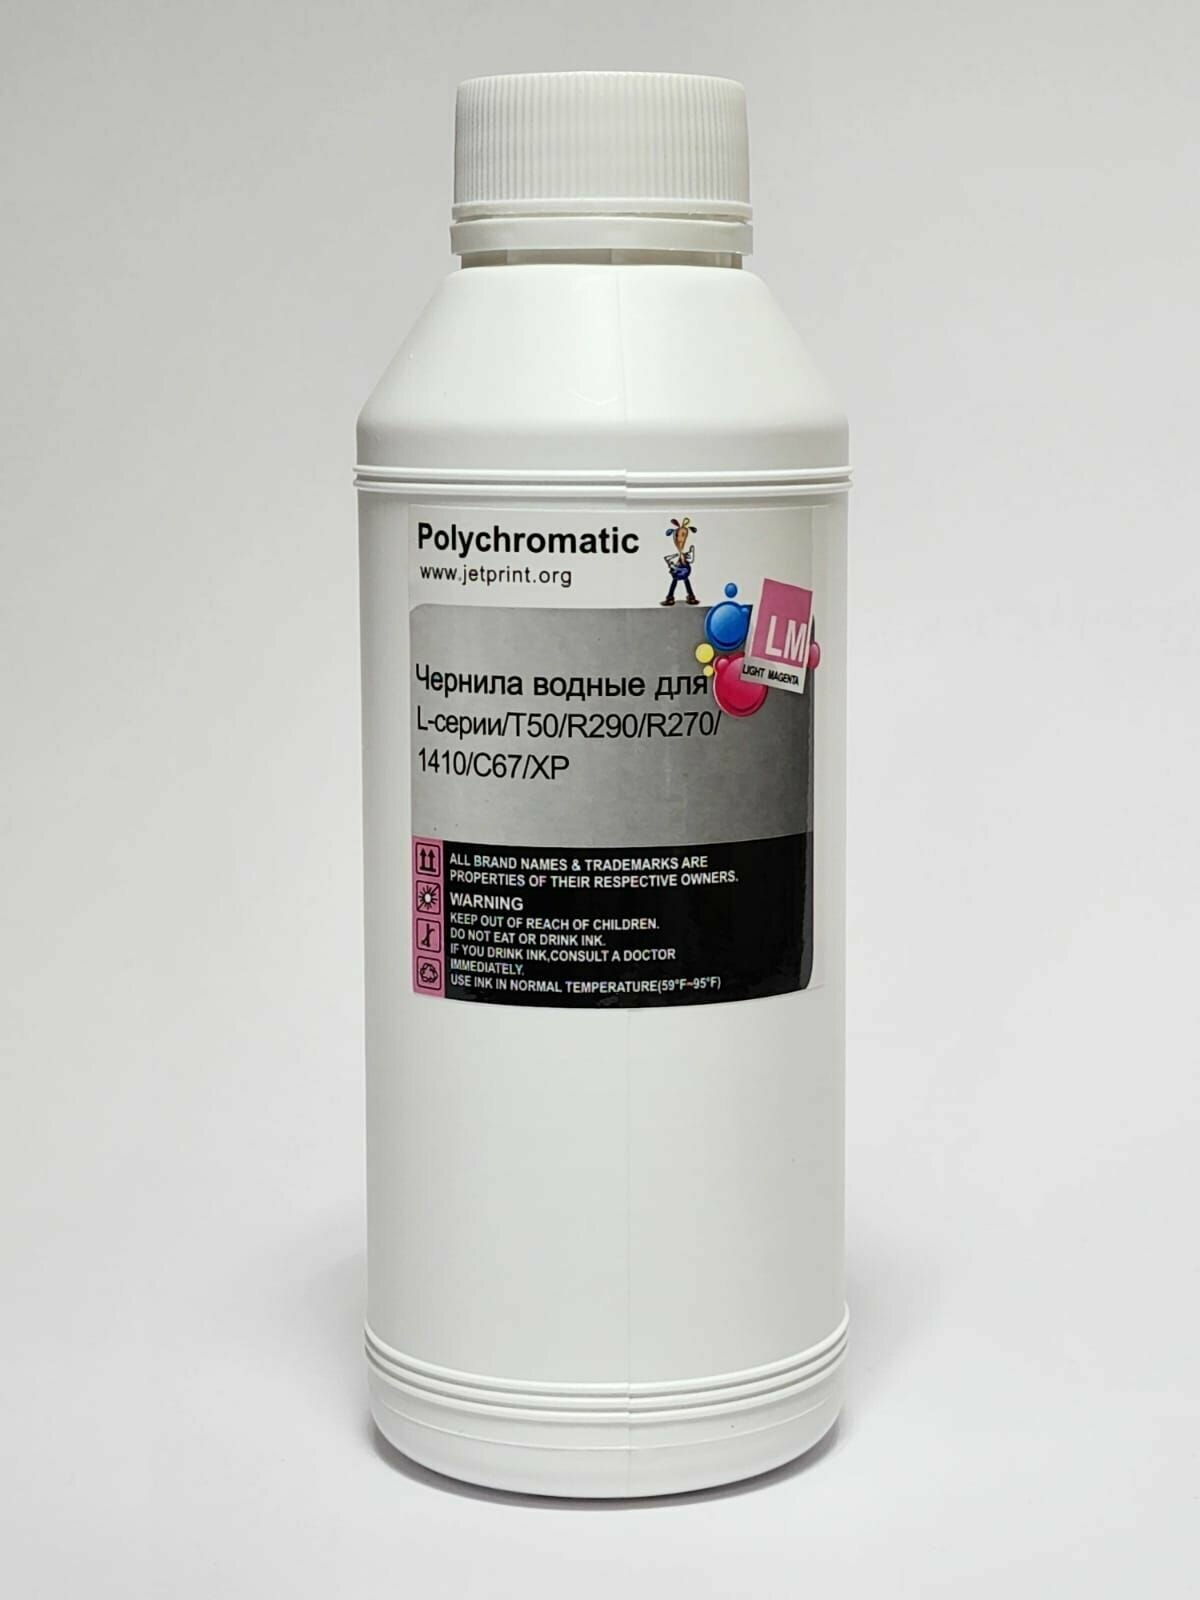 Чернила водные Polychromatic для Epson L-серии/T50/R290/R270/1410/C67/XP, 500мл, цвет светло-пурпурный